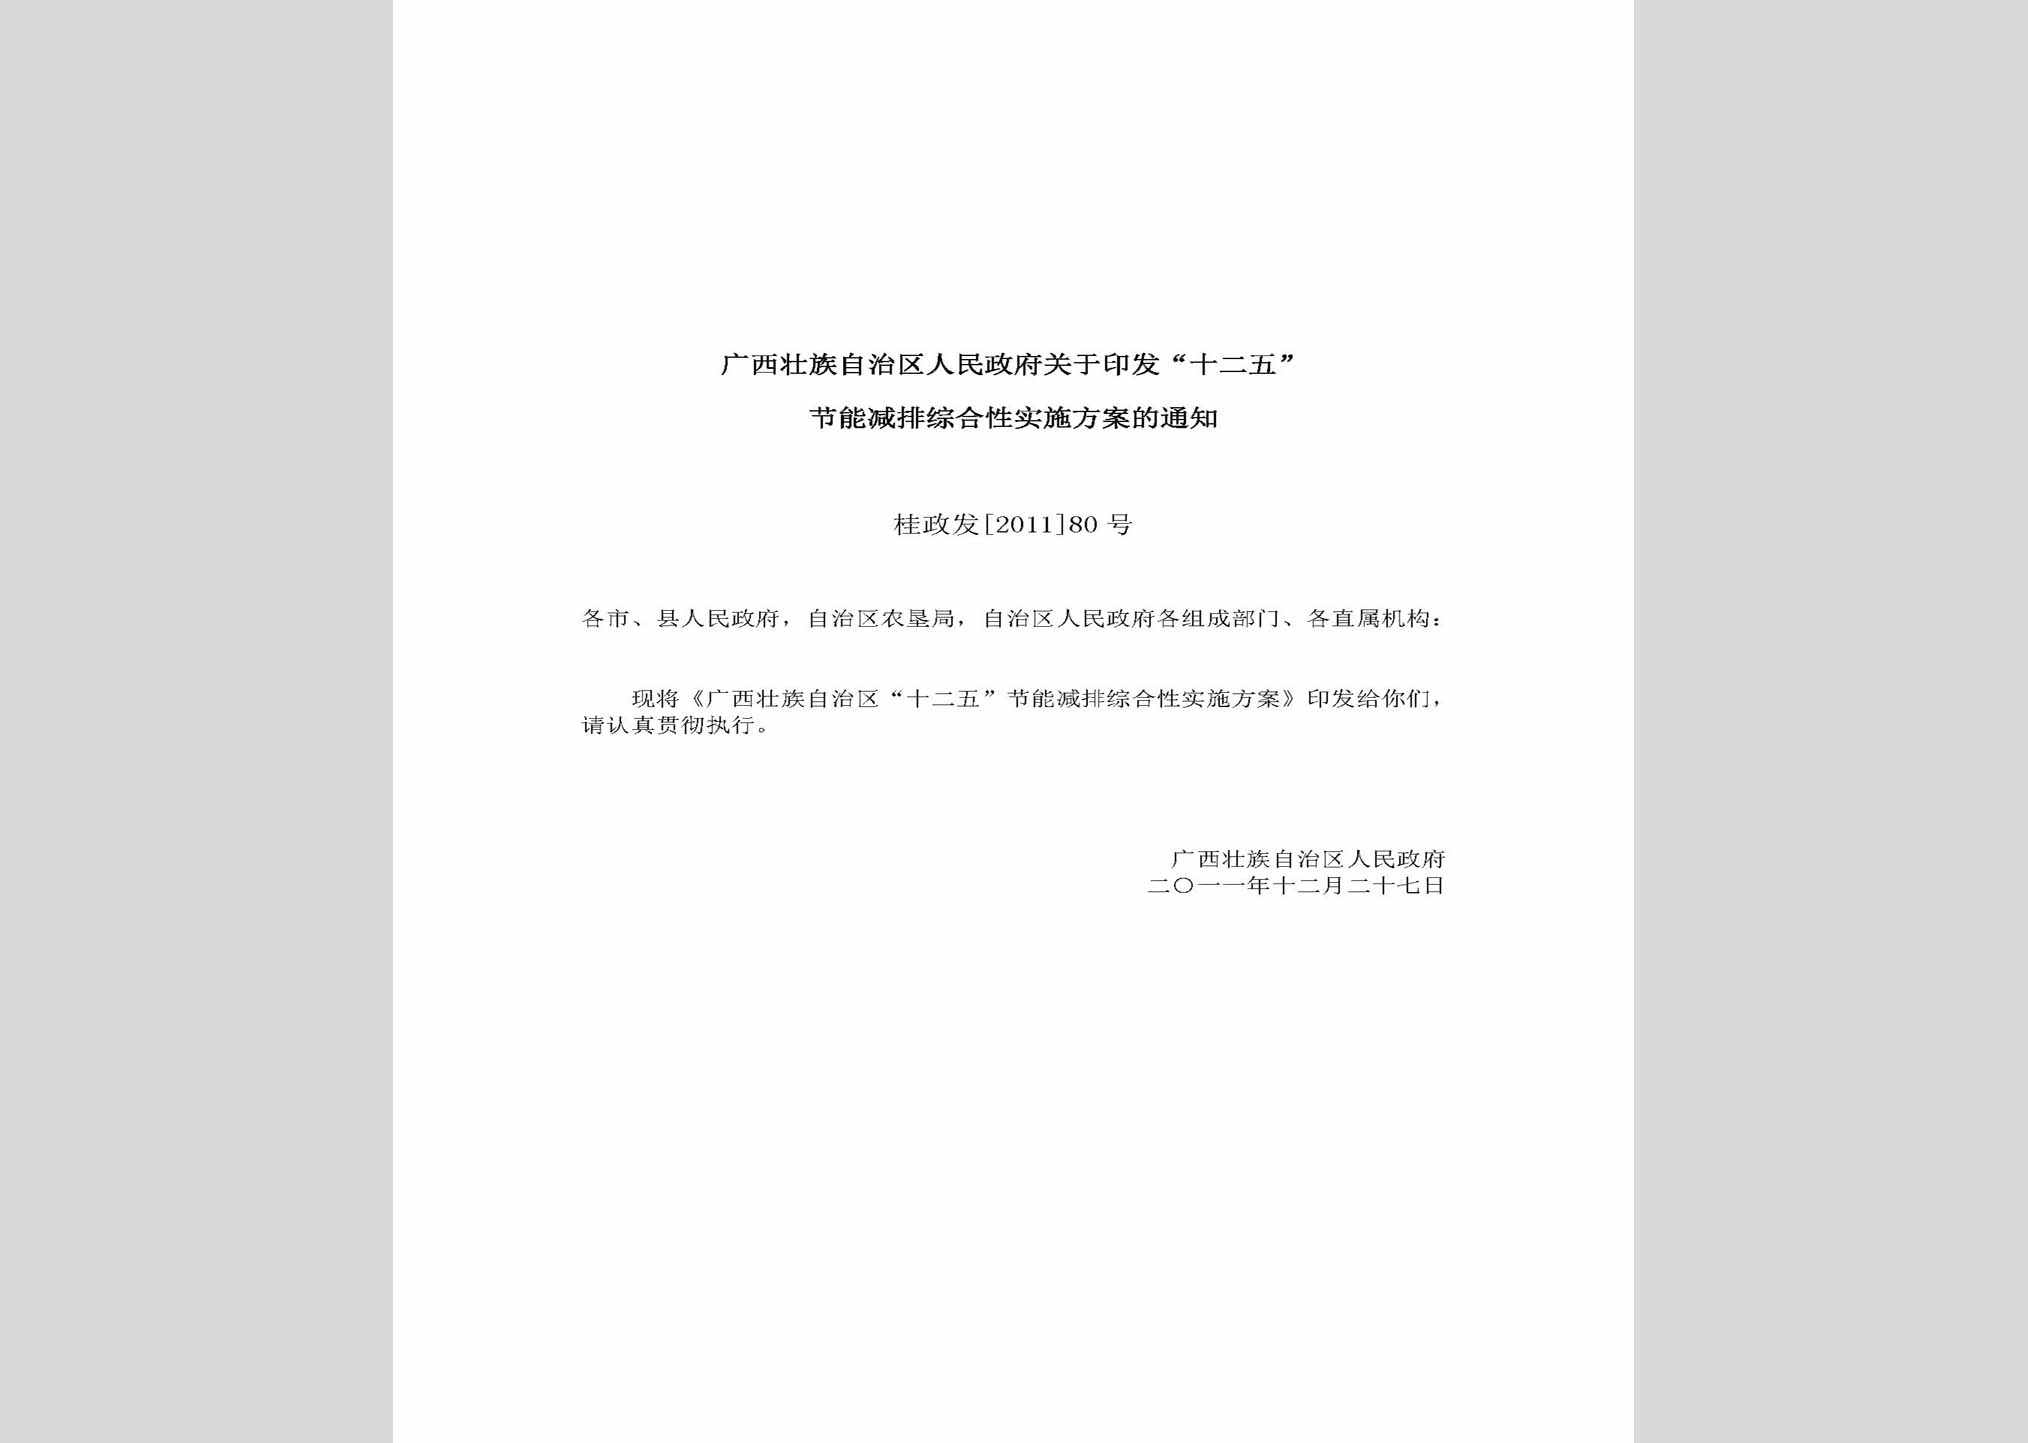 桂政发[2011]80号：广西壮族自治区人民政府关于印发“十二五”节能减排综合性实施方案的通知